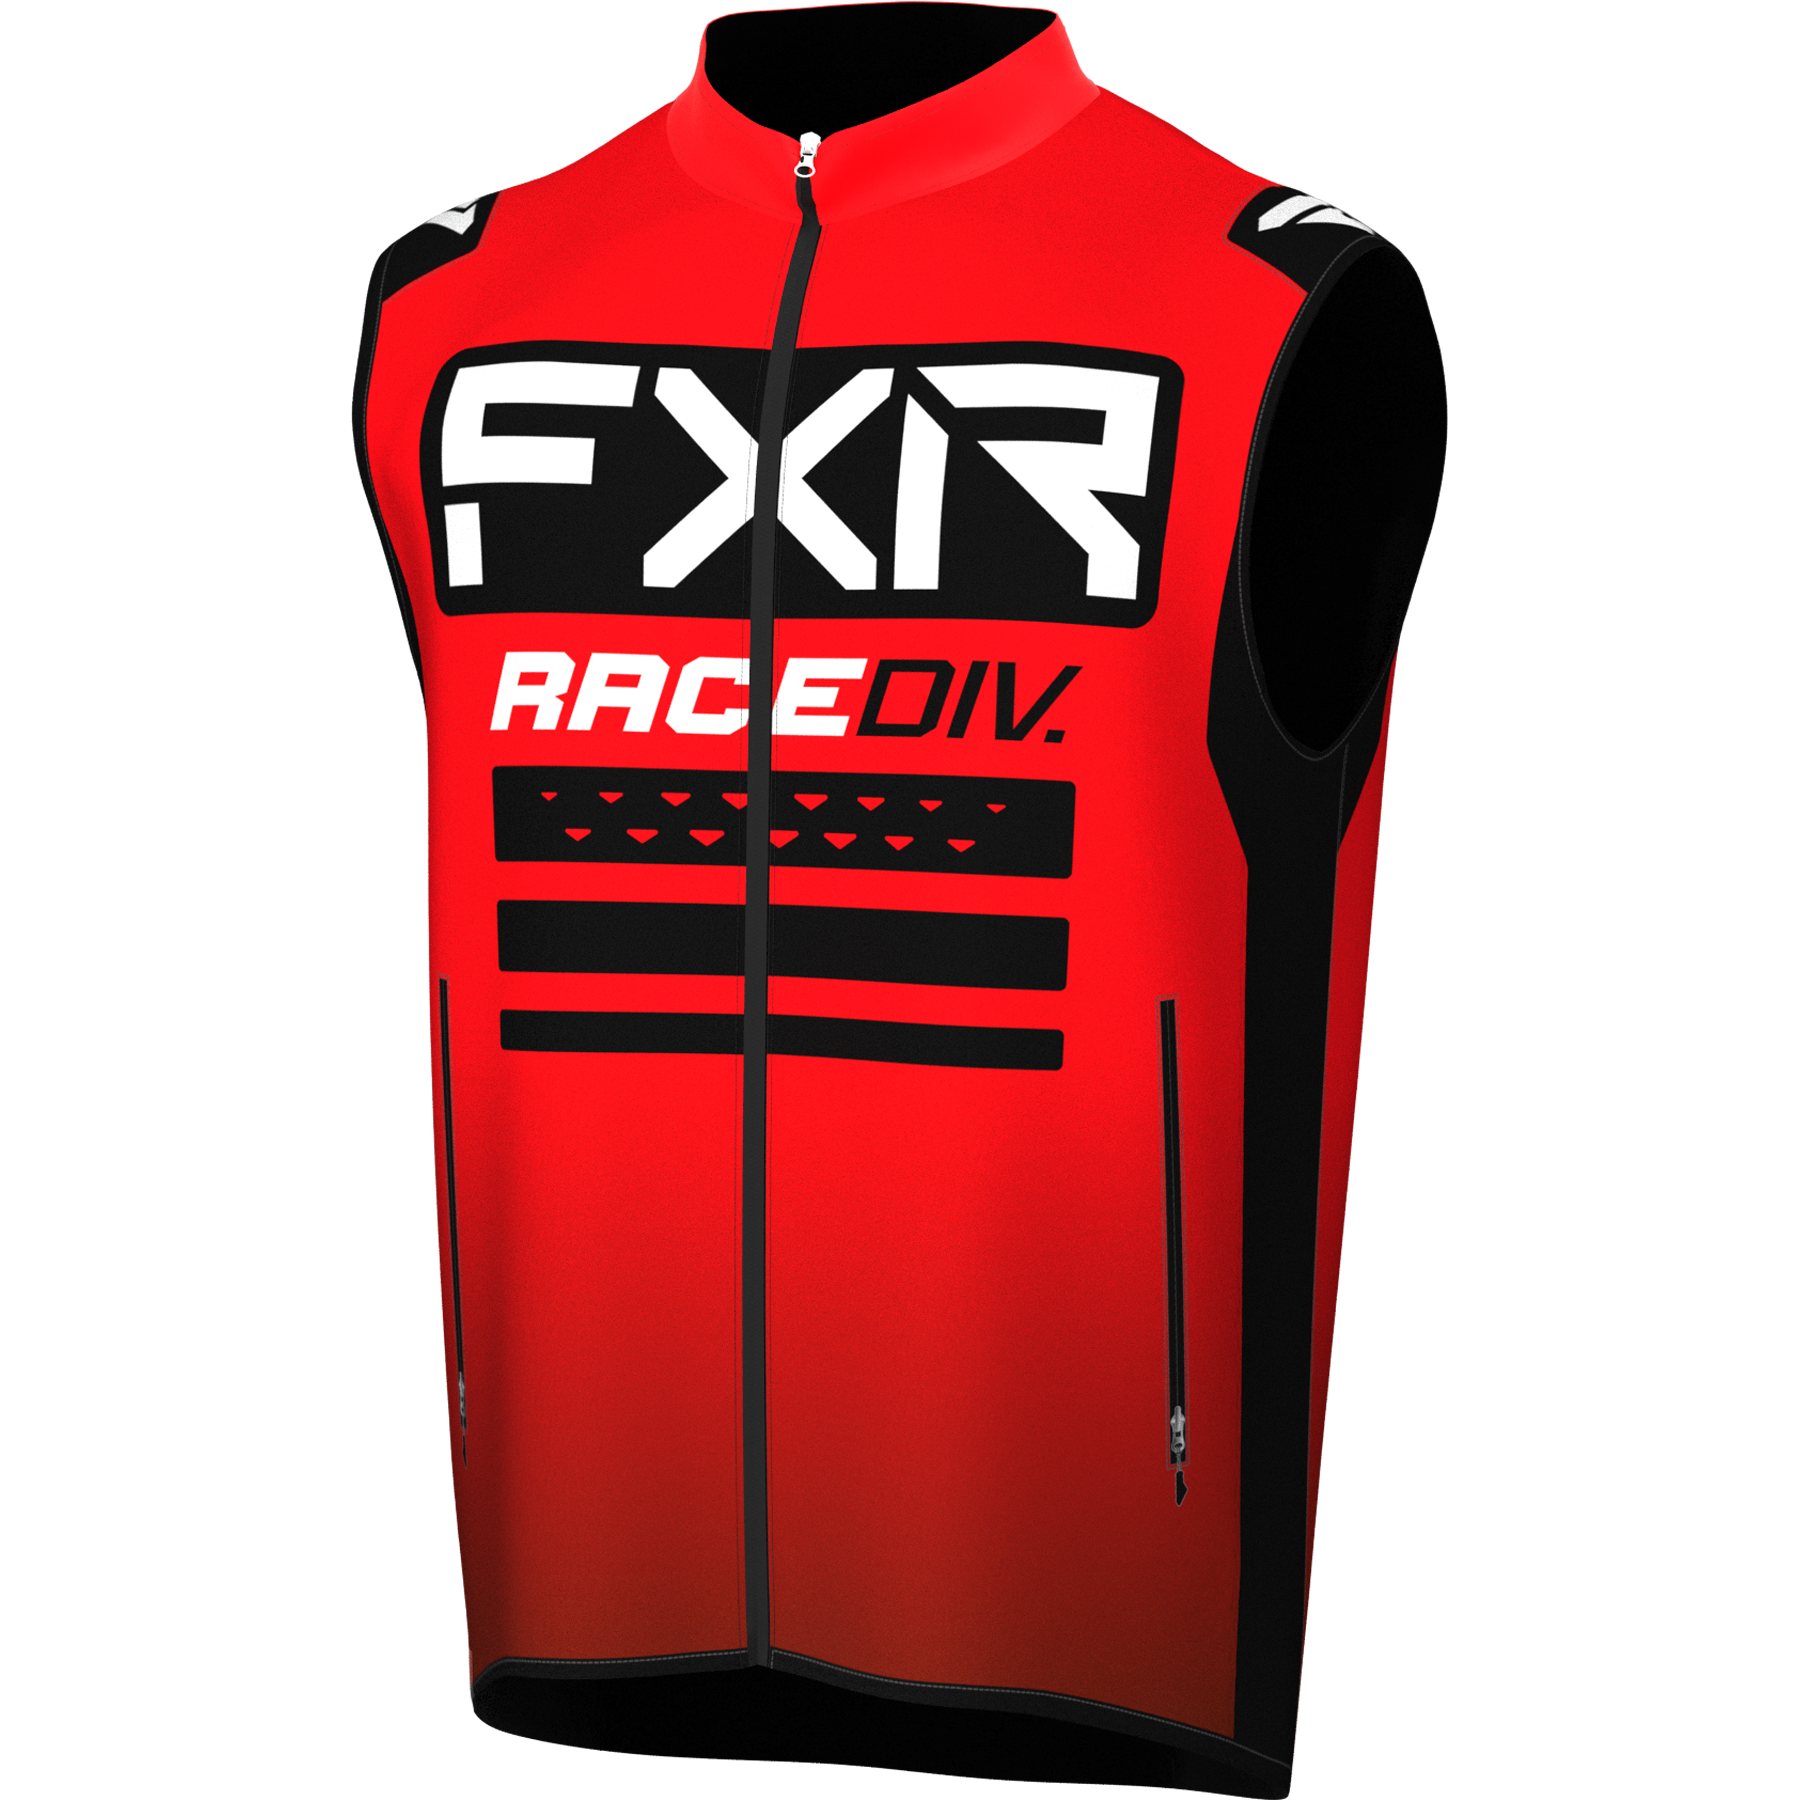 FXR RR Off-Road Vest Red/Black